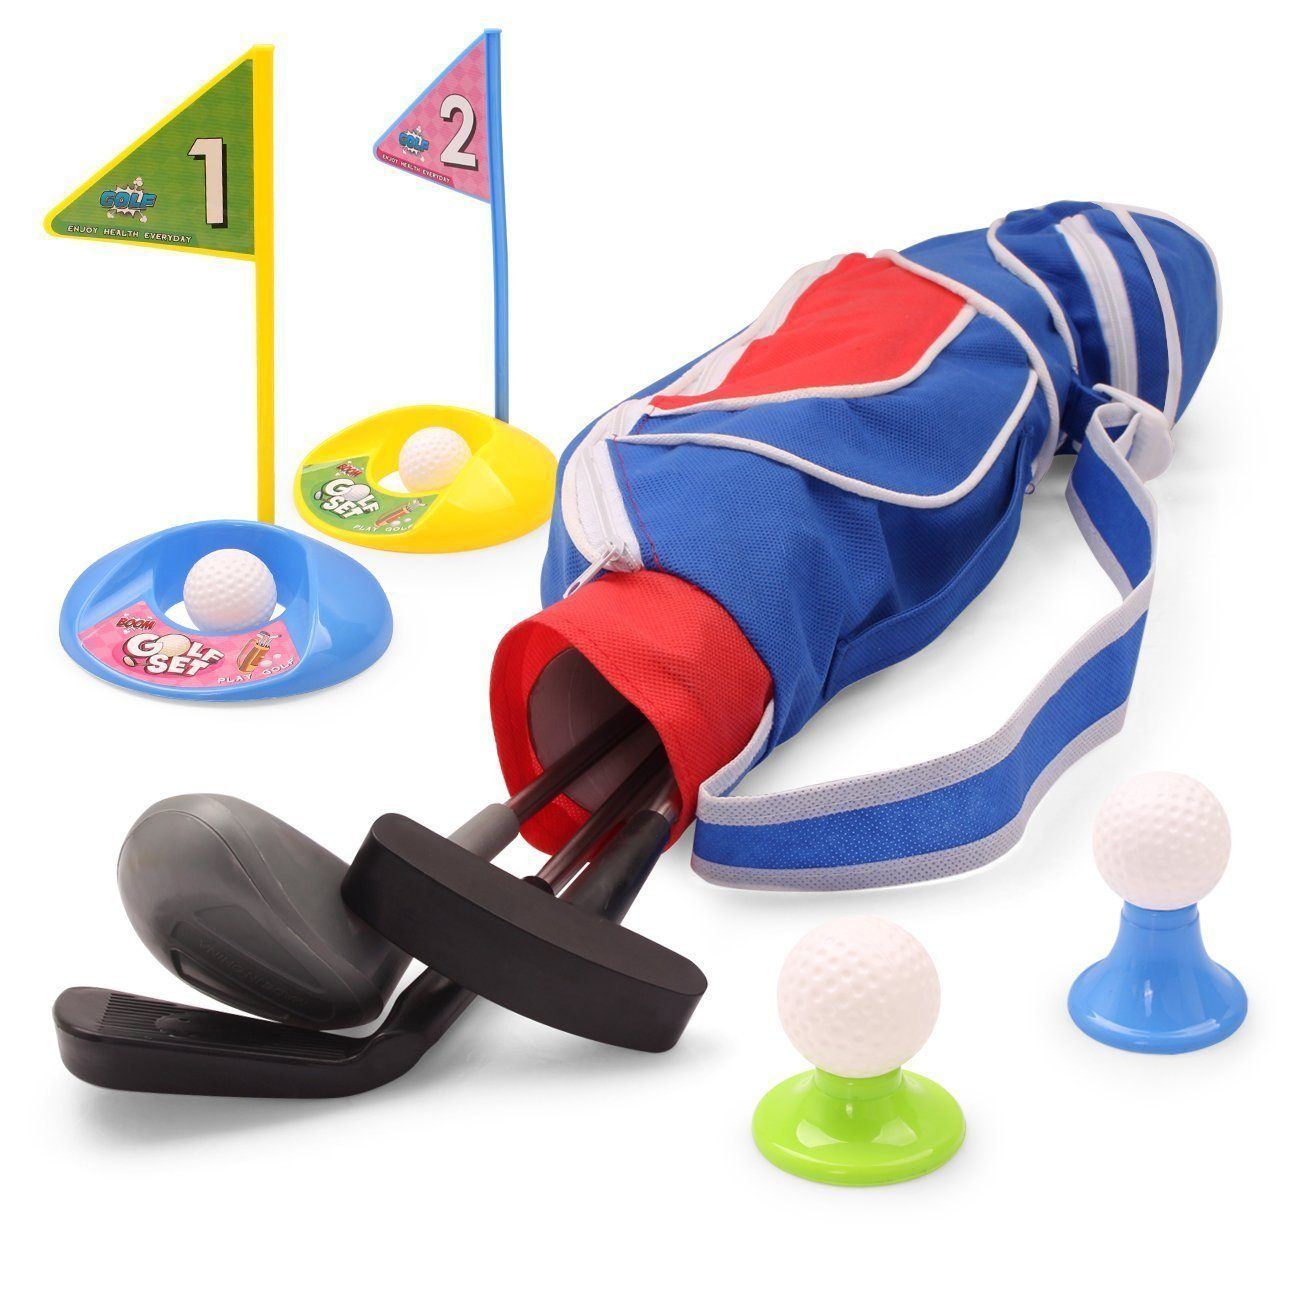 deluxe-happy-kids-golf-clubs-set.jpg